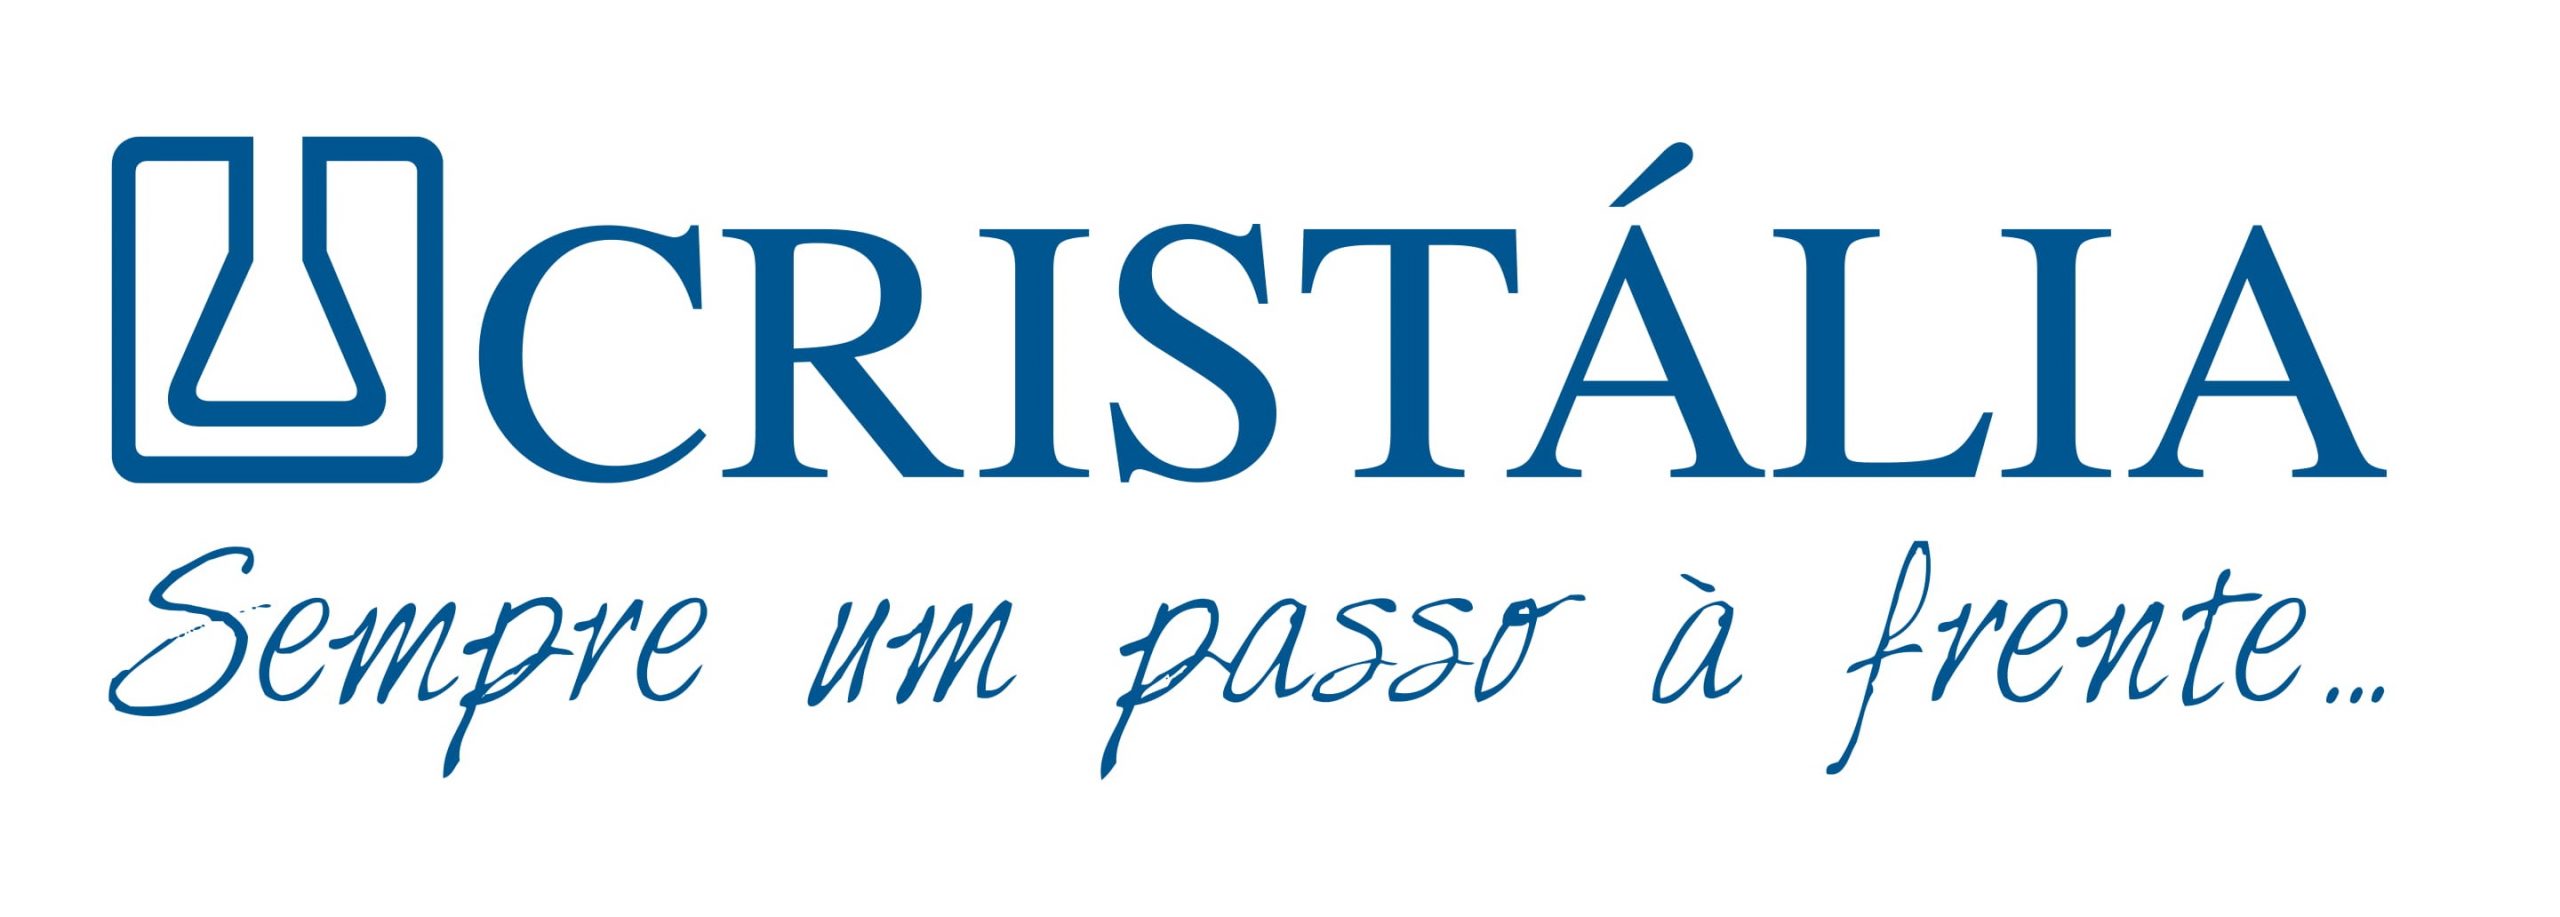 Logo Cristalia c frase alinhada.ai NOVO 1 1 1 scaled - Projeto Cura